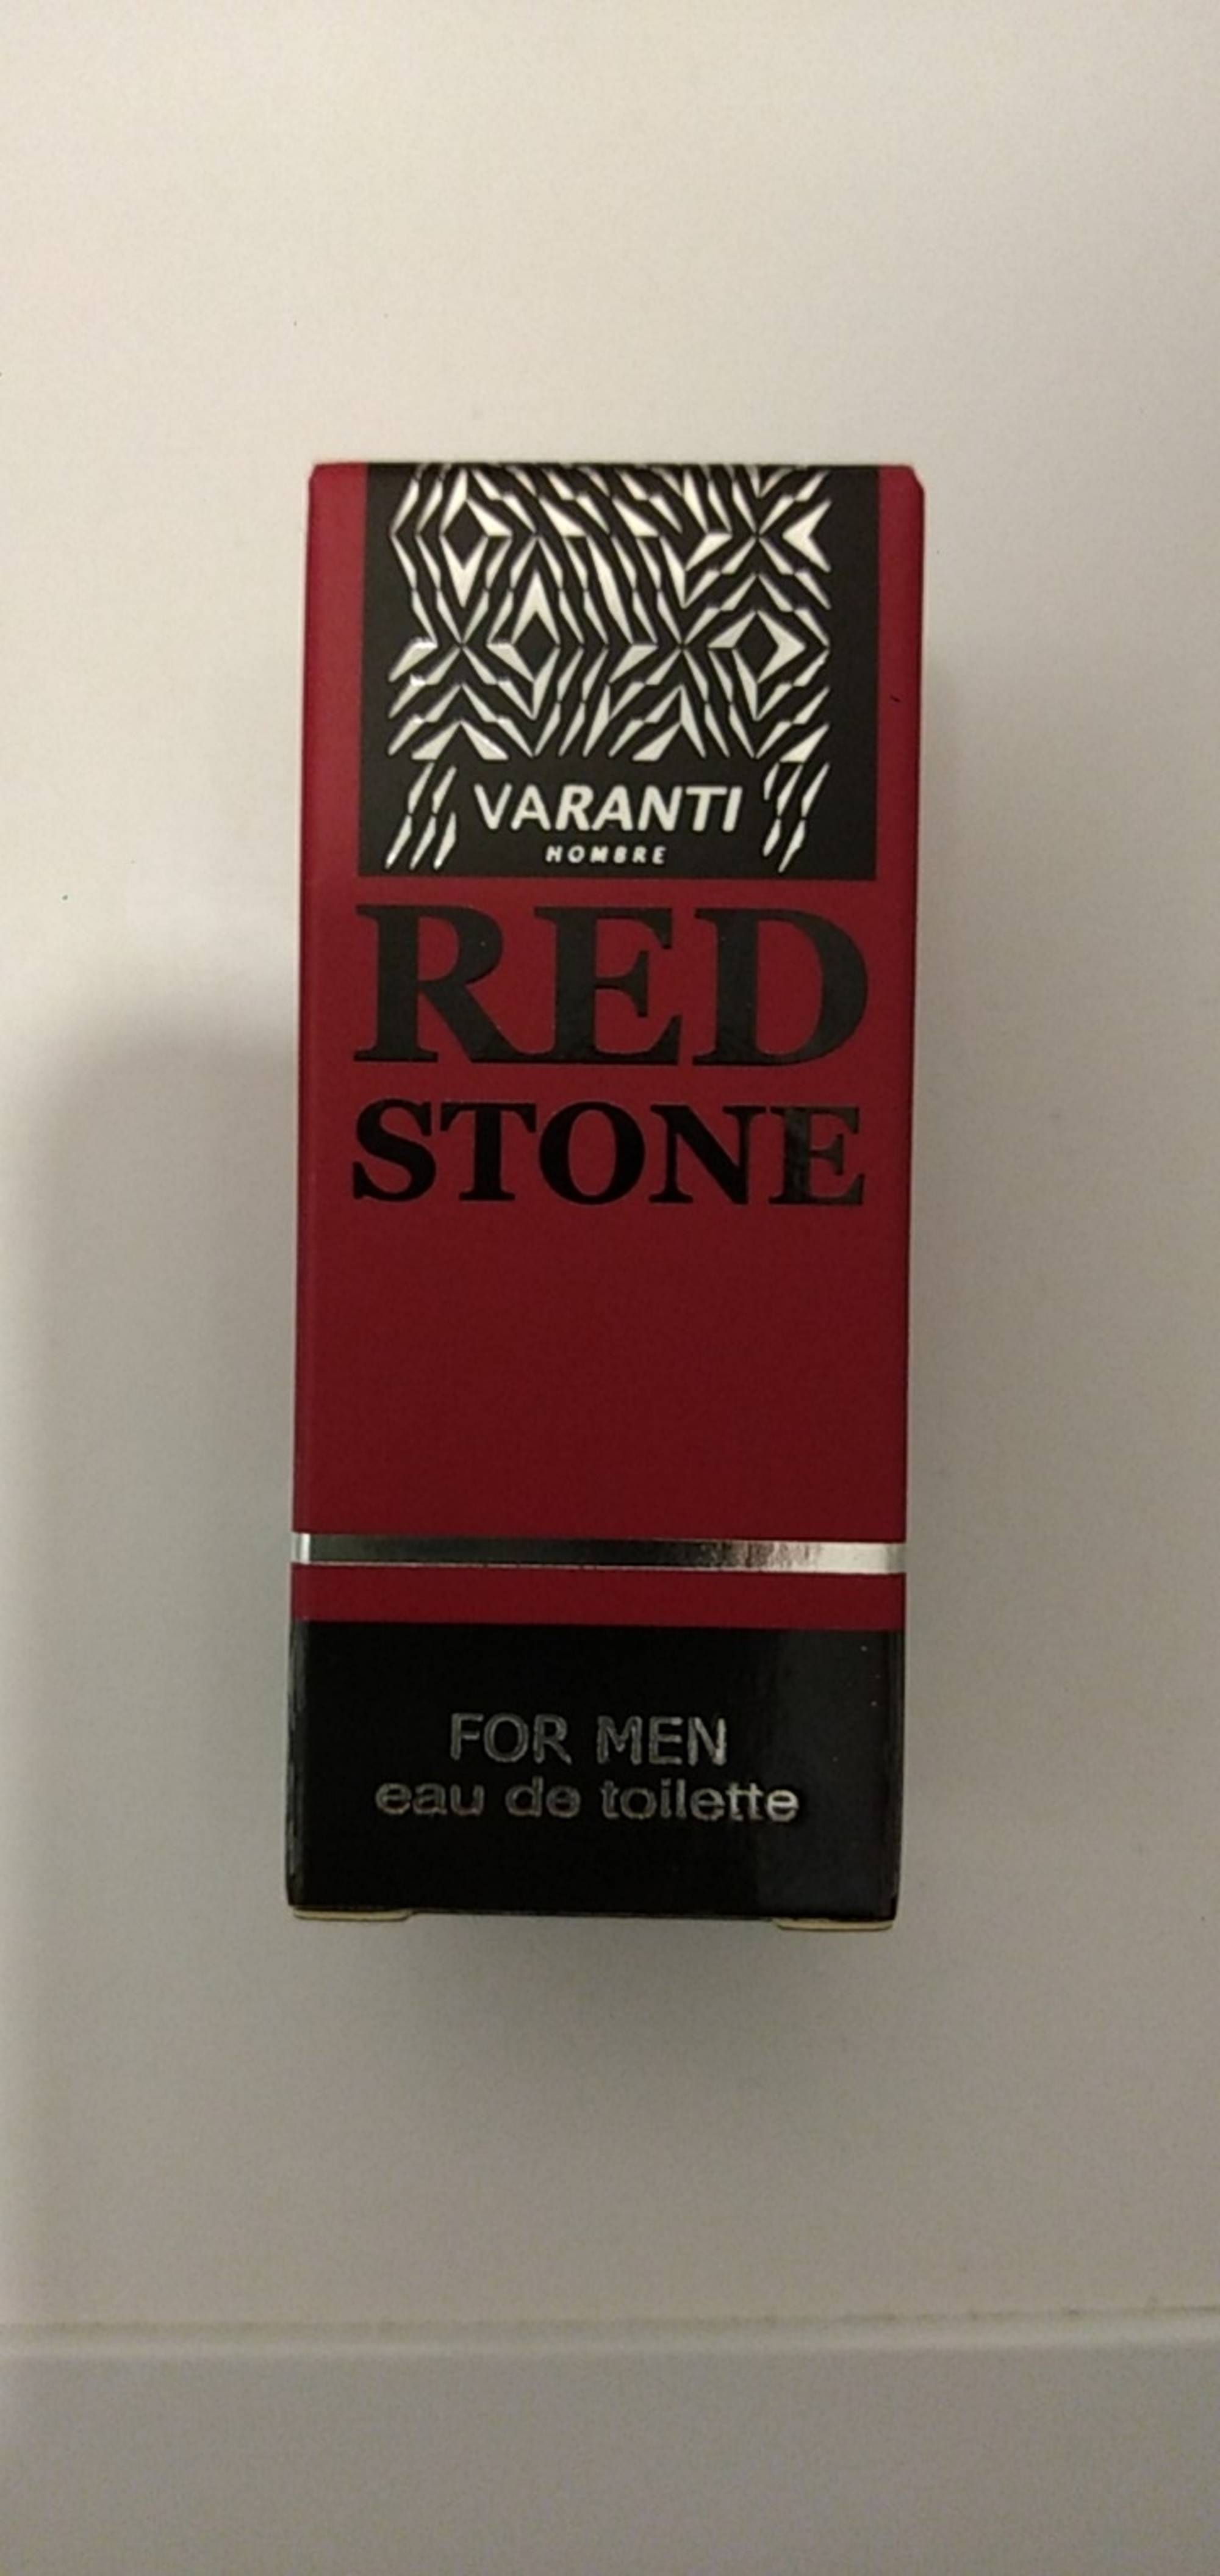 VARANTI HOMBRE - Red stone for men - Eau de toilette